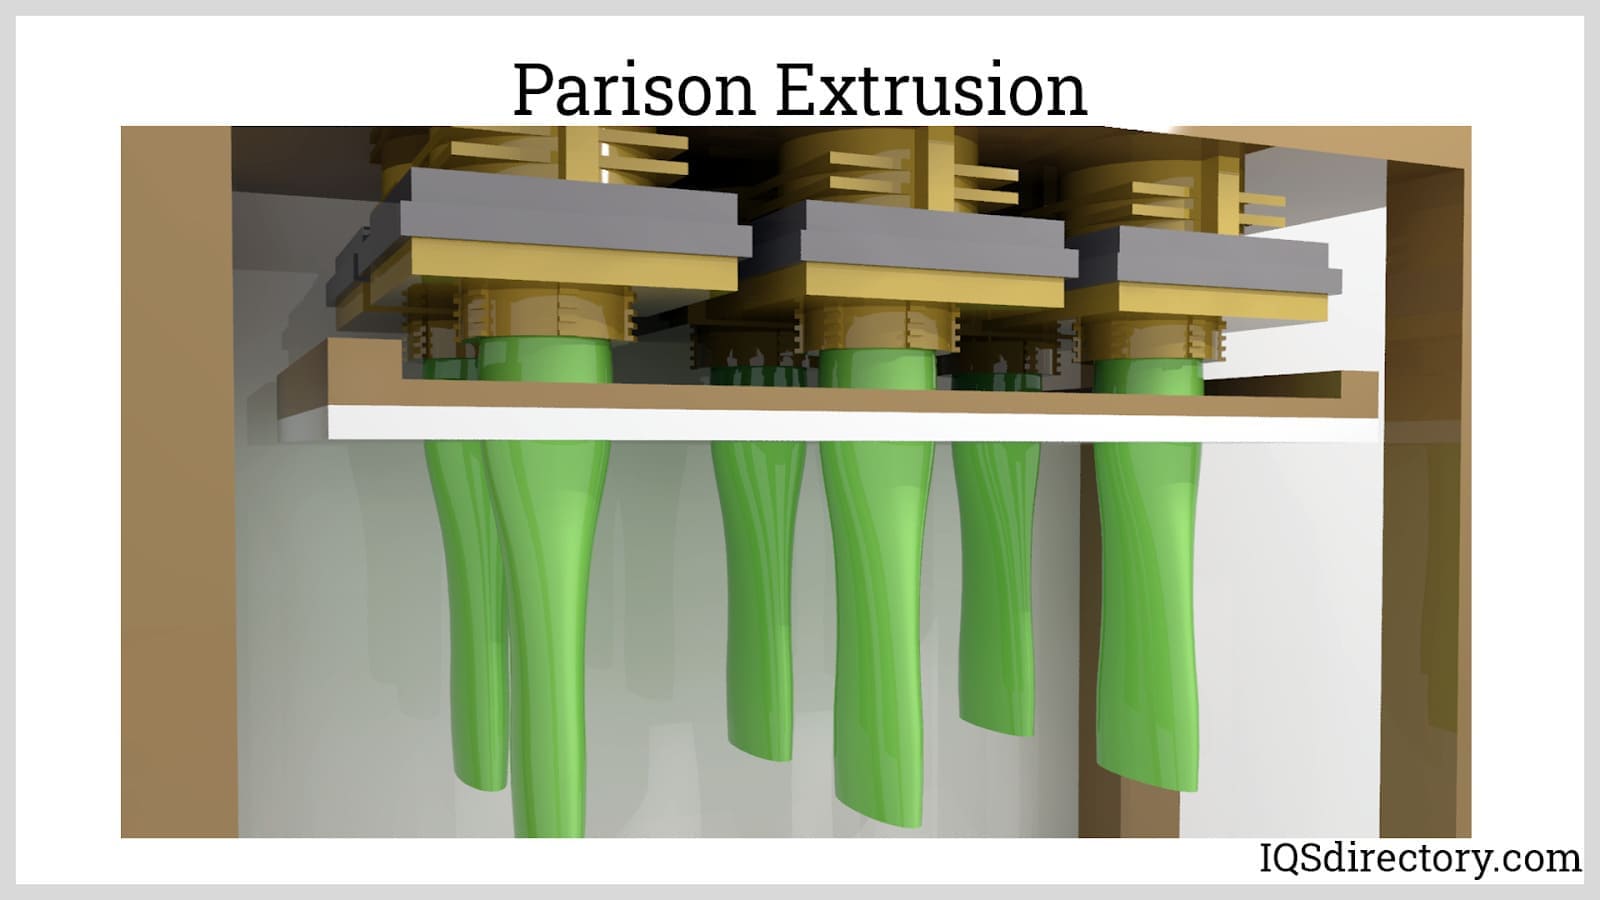 Parison Extrusion